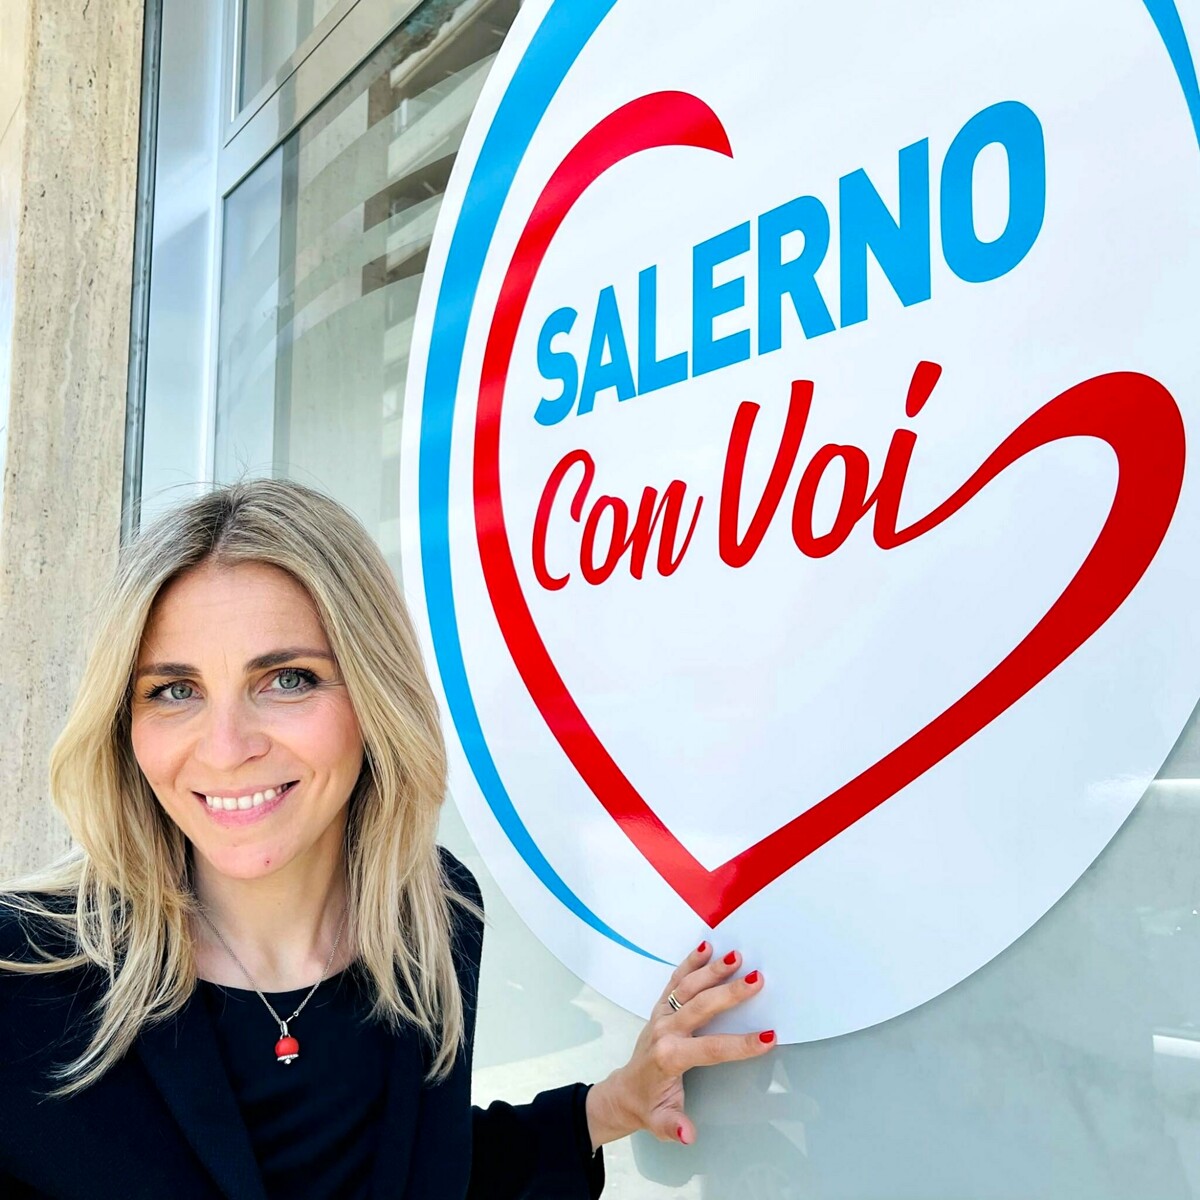 Elezioni 2021, Tea Siano (Salerno con Voi): “La politica si occupi della città e non di toto candidati”